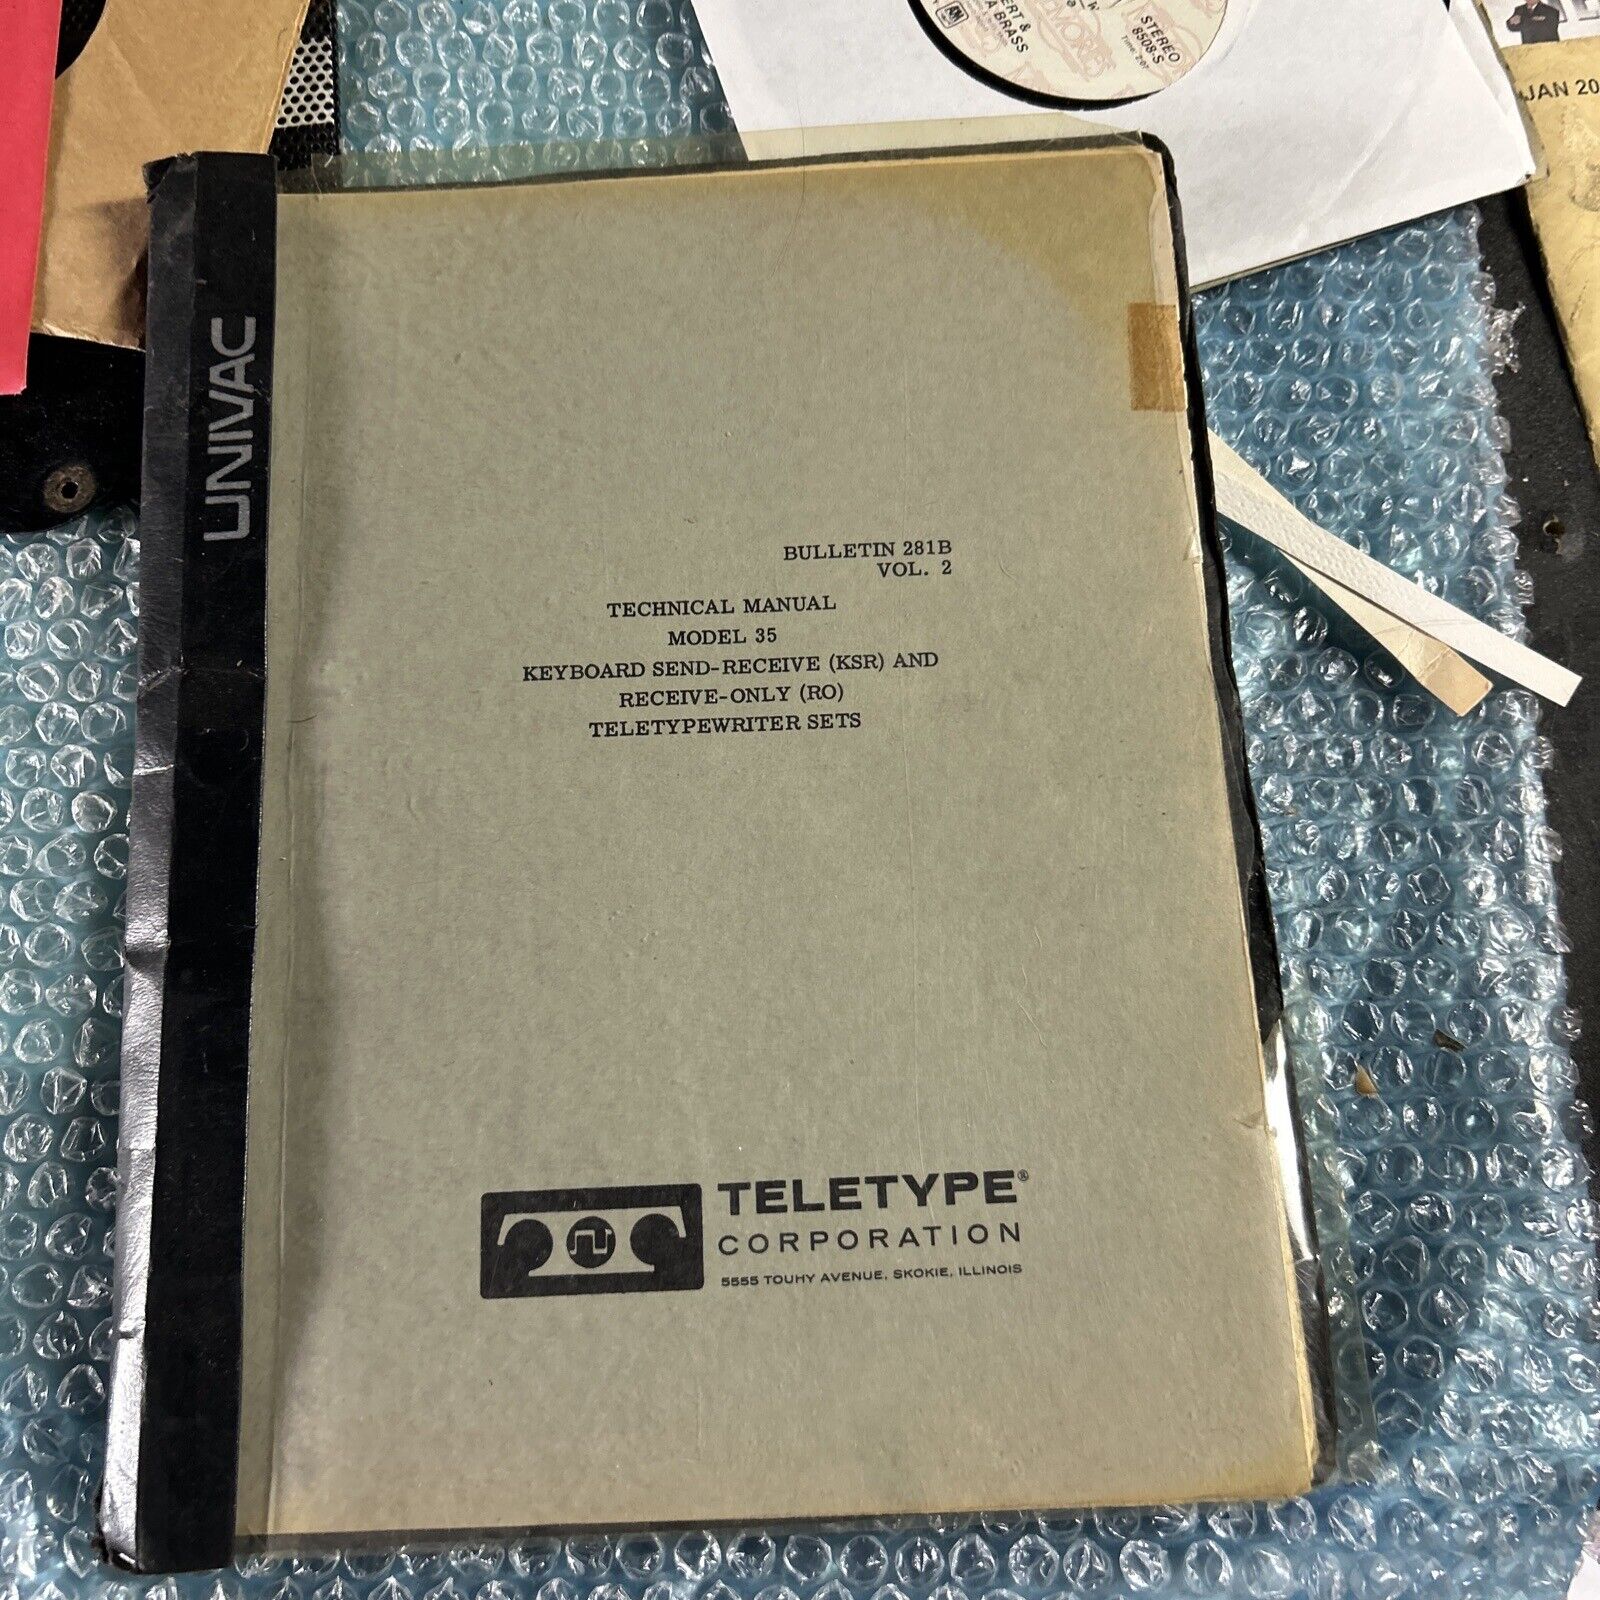 original 1966 Model 35 Teletype Corporation Typewriter Sets Bulletin 281B